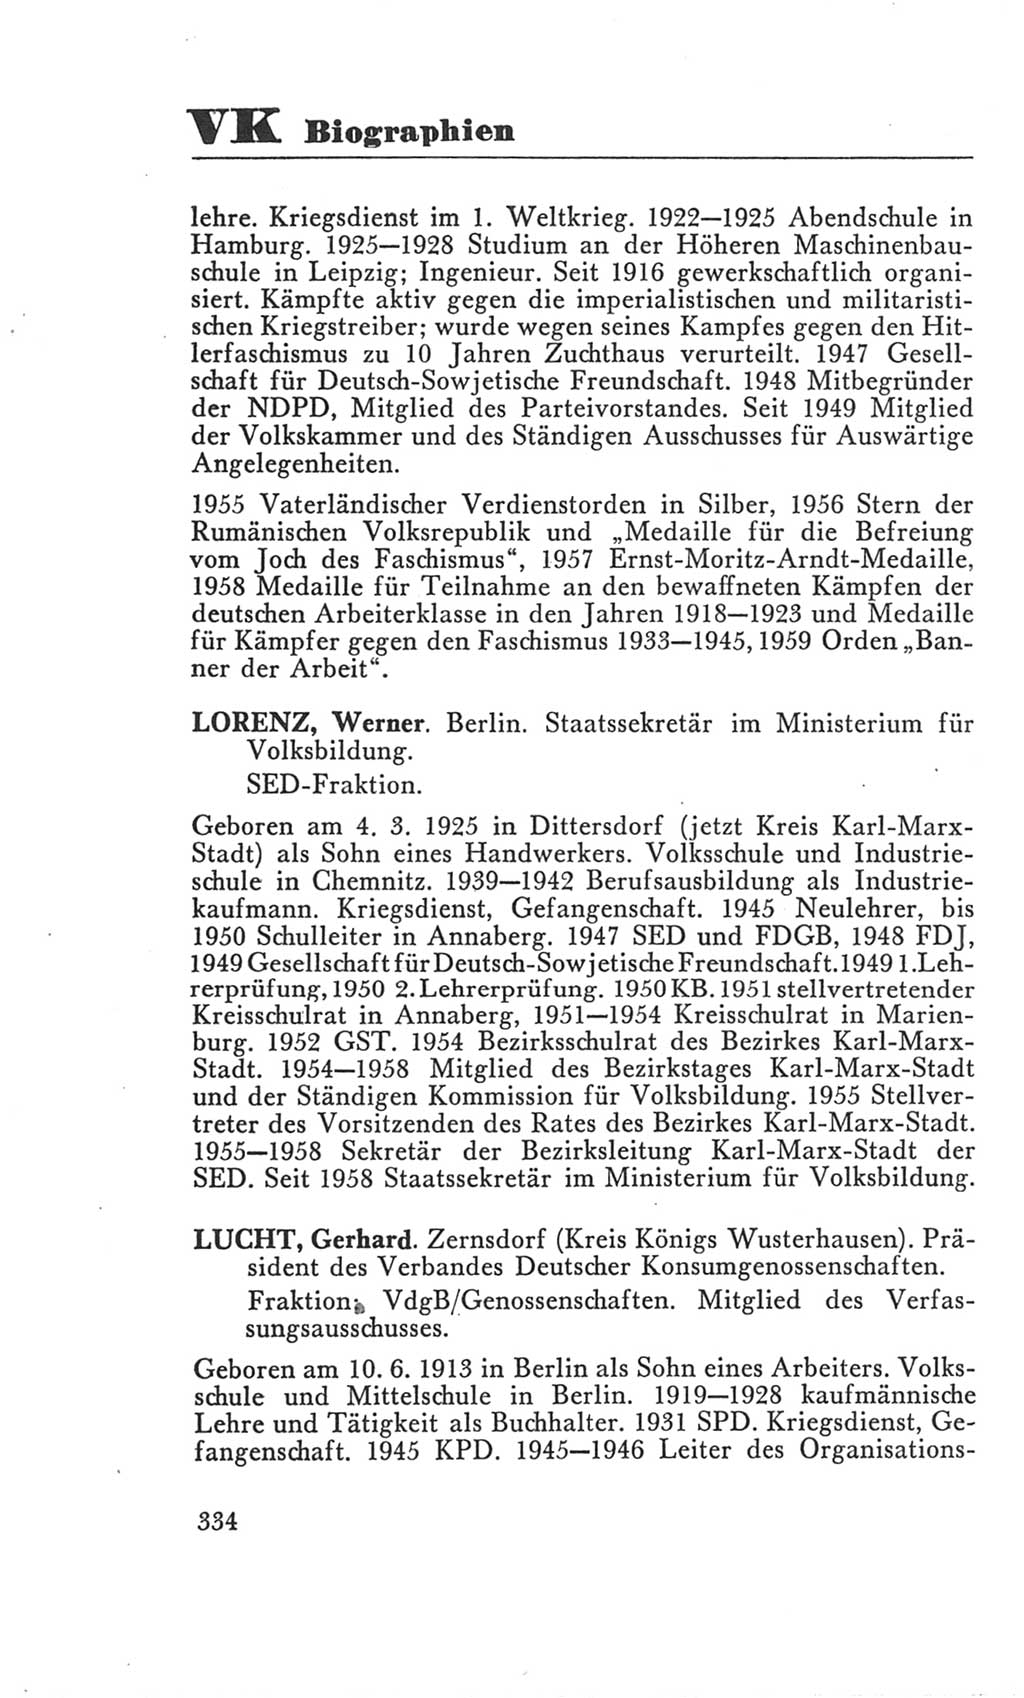 Handbuch der Volkskammer (VK) der Deutschen Demokratischen Republik (DDR), 3. Wahlperiode 1958-1963, Seite 334 (Hdb. VK. DDR 3. WP. 1958-1963, S. 334)